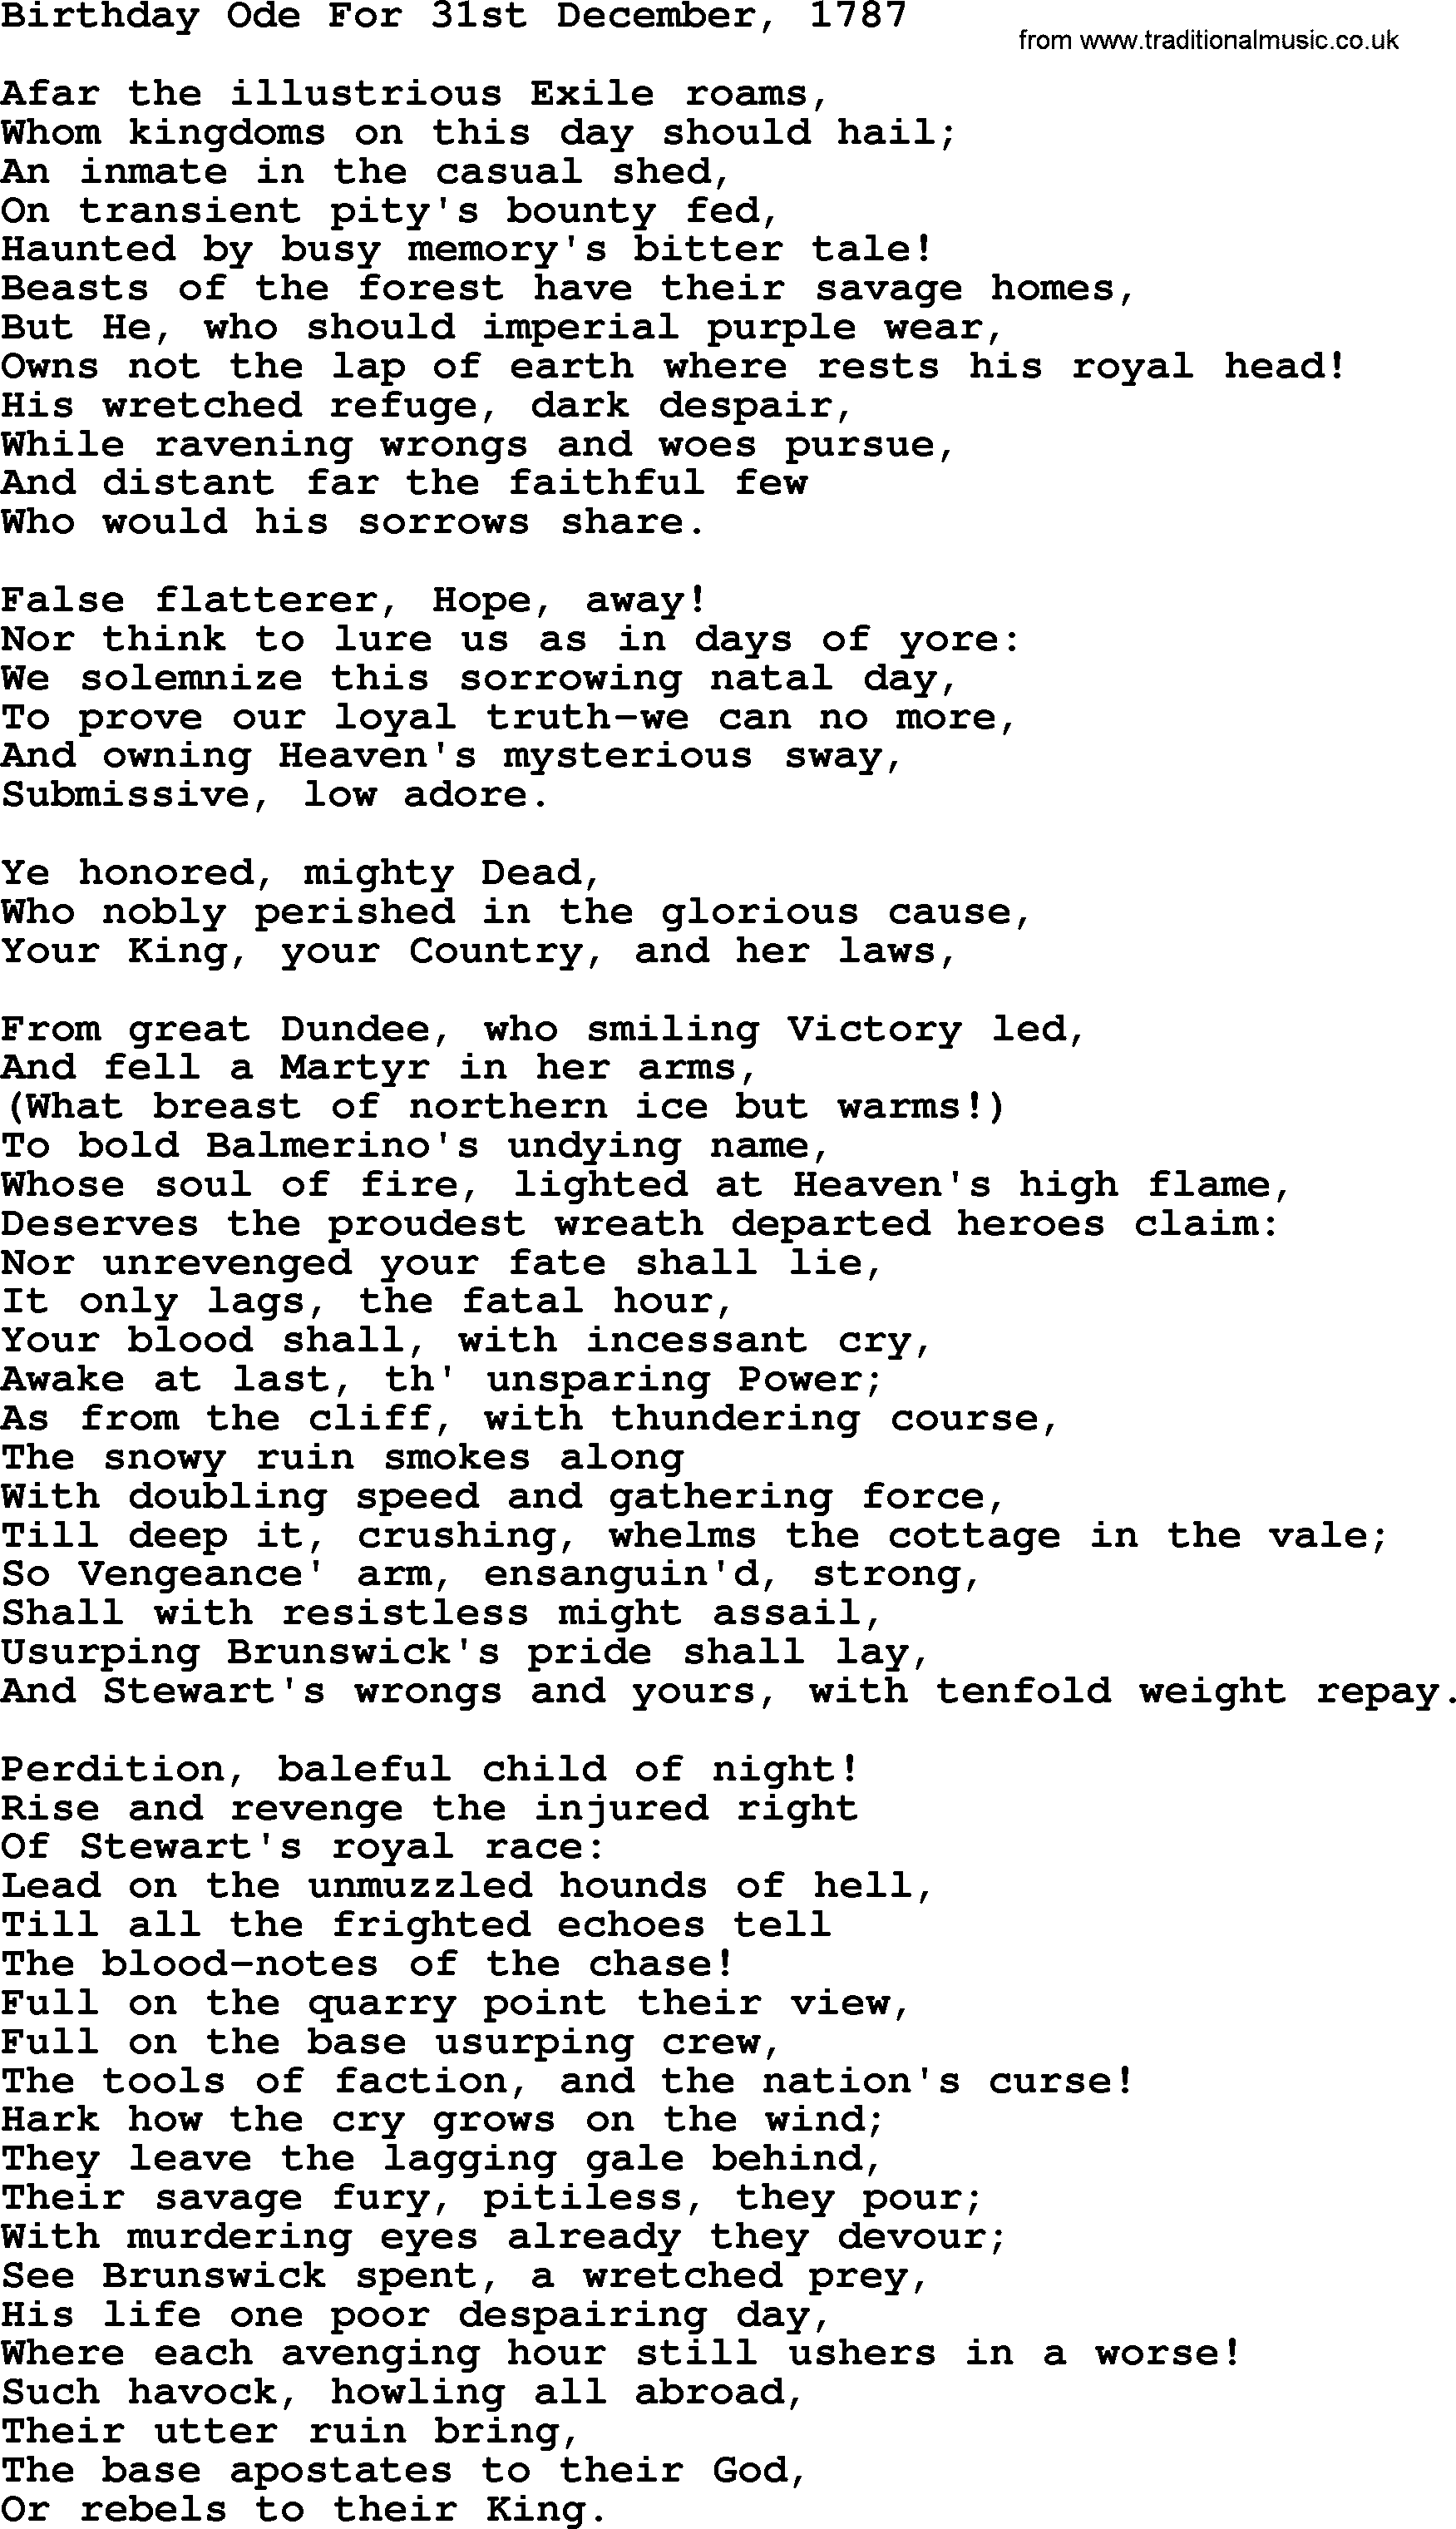 Robert Burns Songs & Lyrics: Birthday Ode For 31st December, 1787